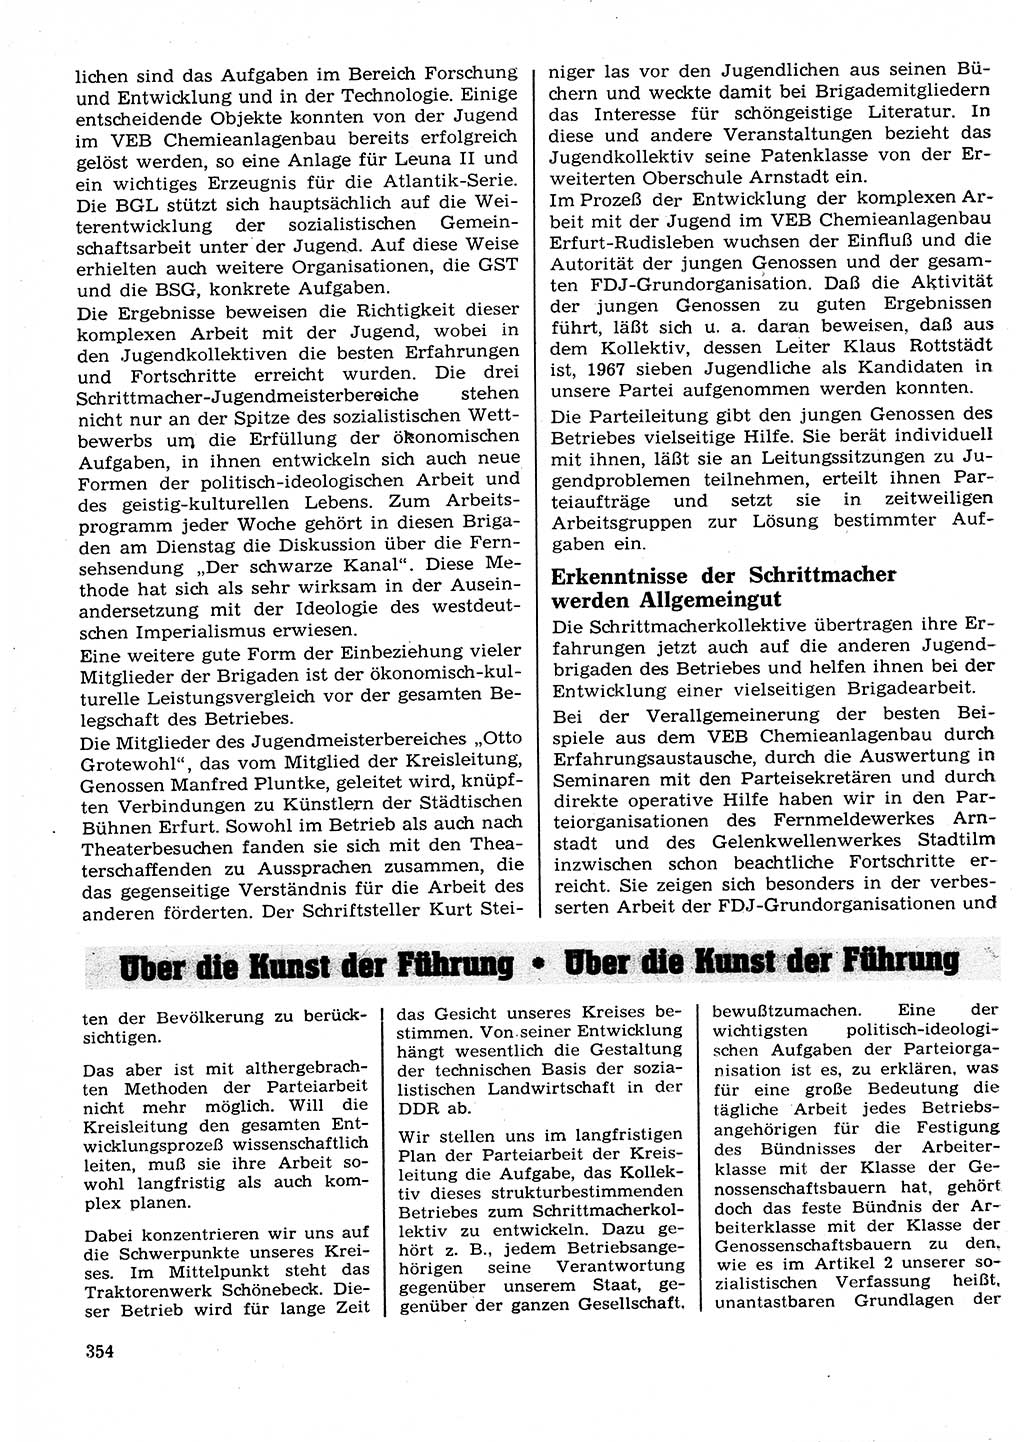 Neuer Weg (NW), Organ des Zentralkomitees (ZK) der SED (Sozialistische Einheitspartei Deutschlands) für Fragen des Parteilebens, 23. Jahrgang [Deutsche Demokratische Republik (DDR)] 1968, Seite 354 (NW ZK SED DDR 1968, S. 354)